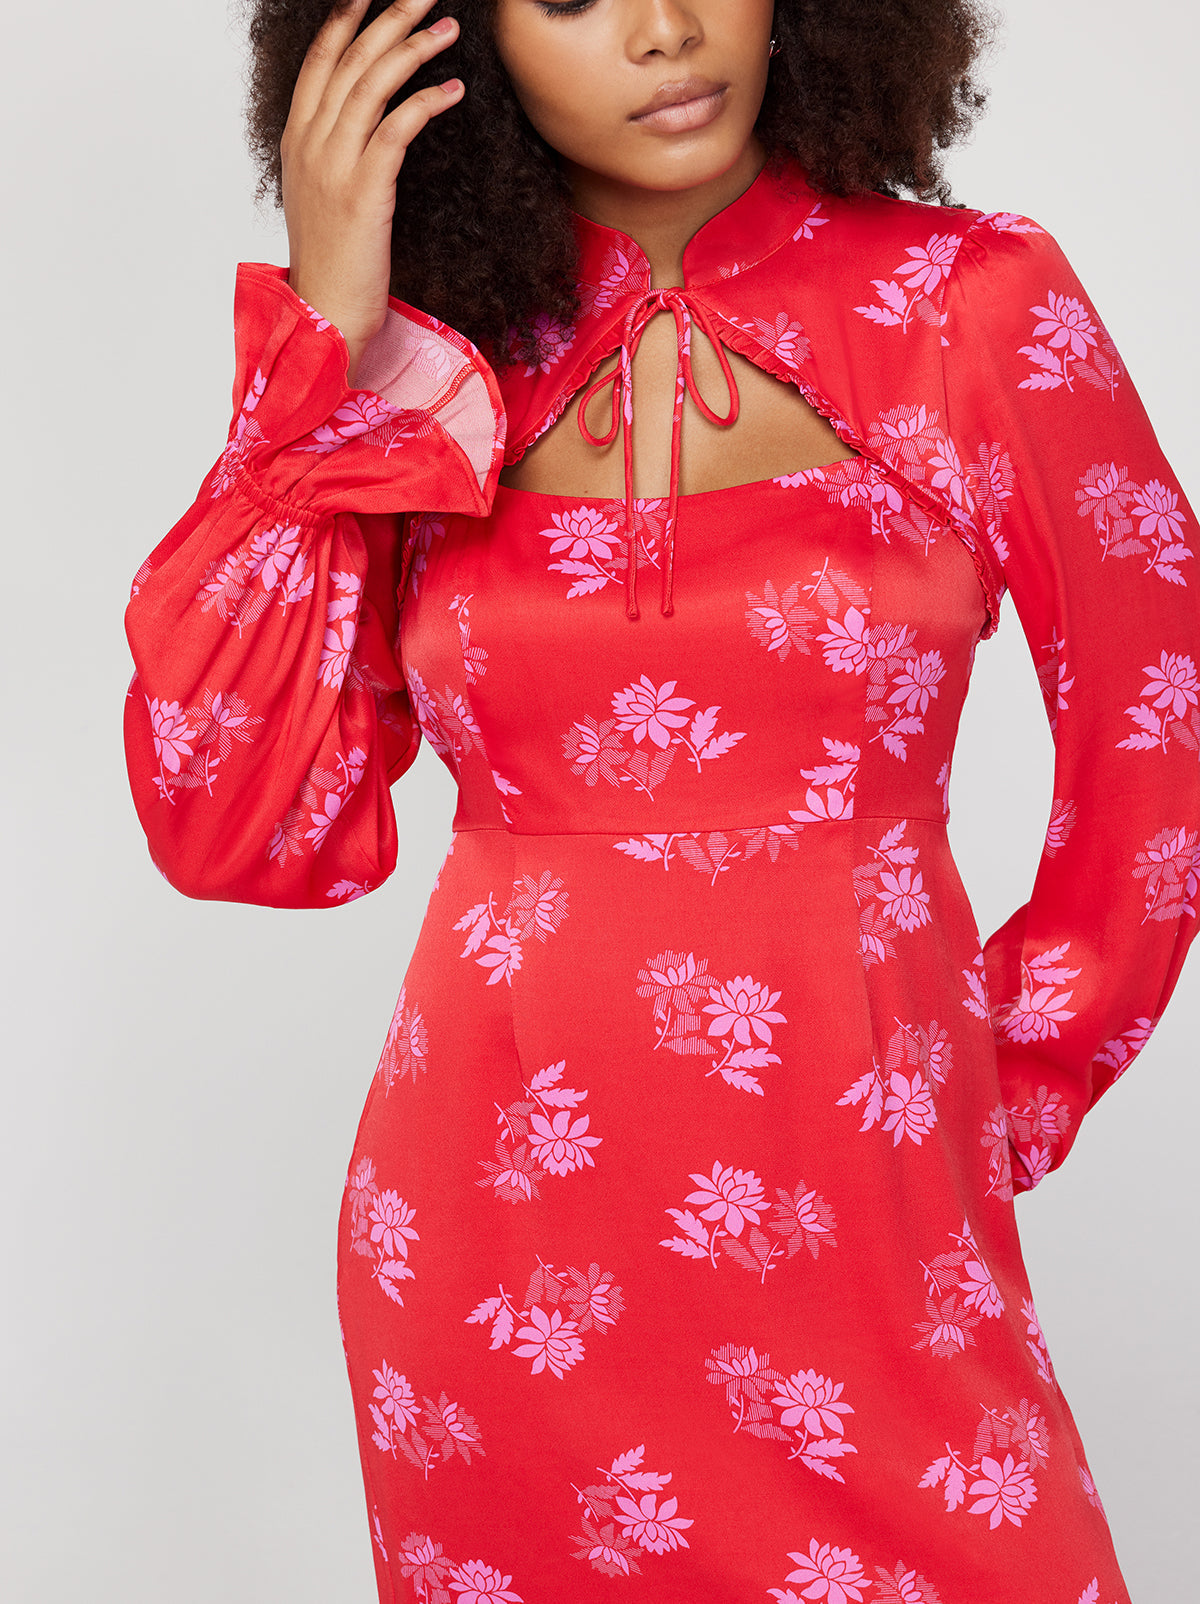 Valentina Red Floral Mini Dress By KITRI Studio